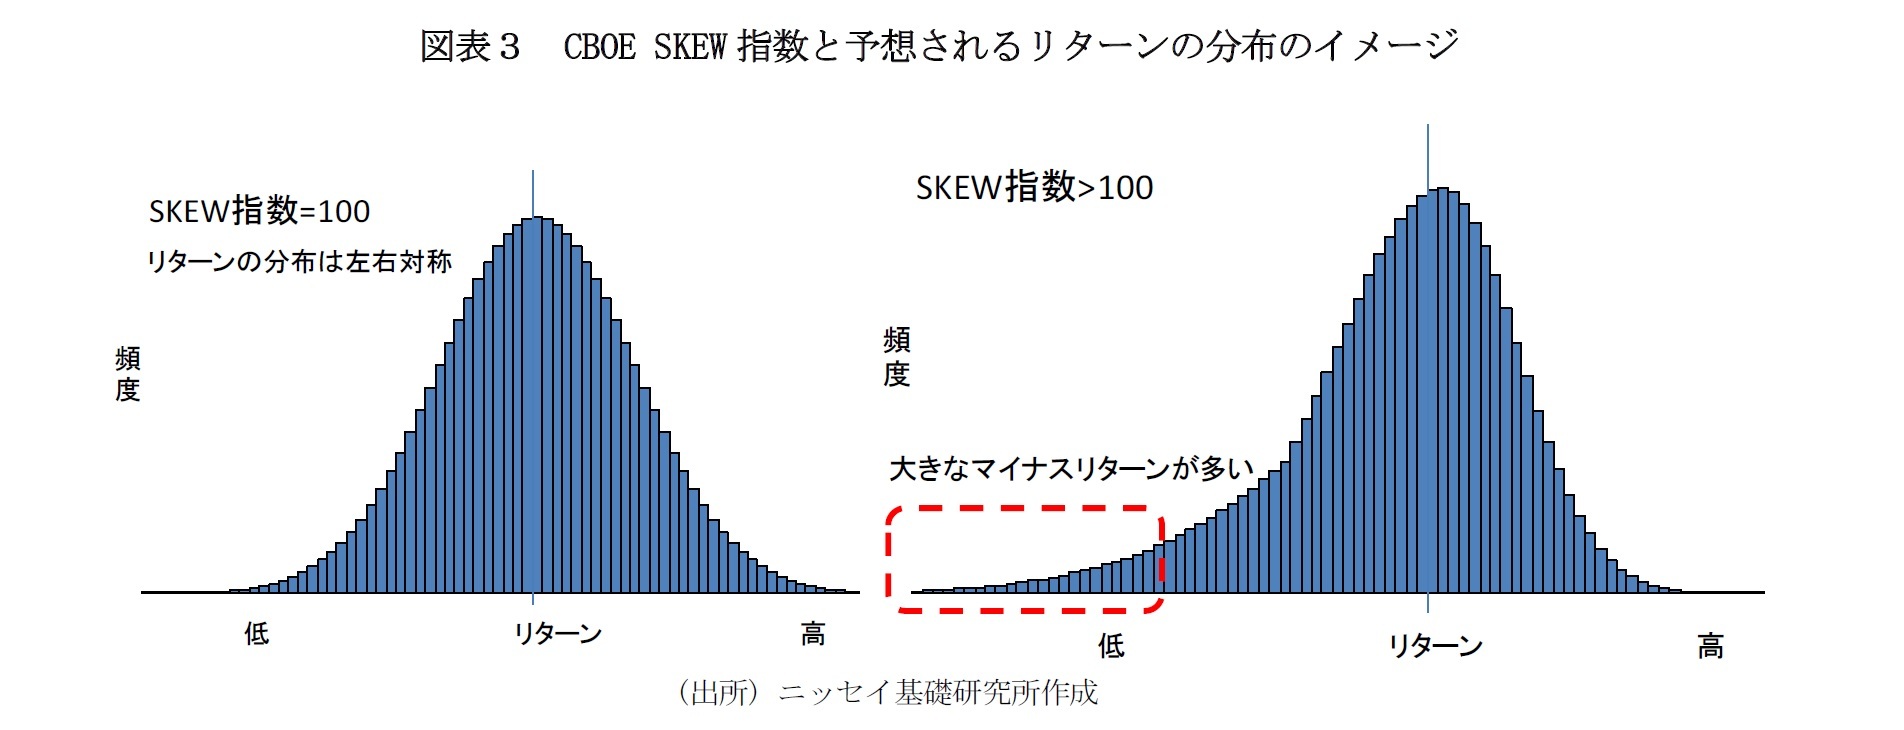 図表３　CBOE SKEW指数と予想されるリターンの分布のイメージ